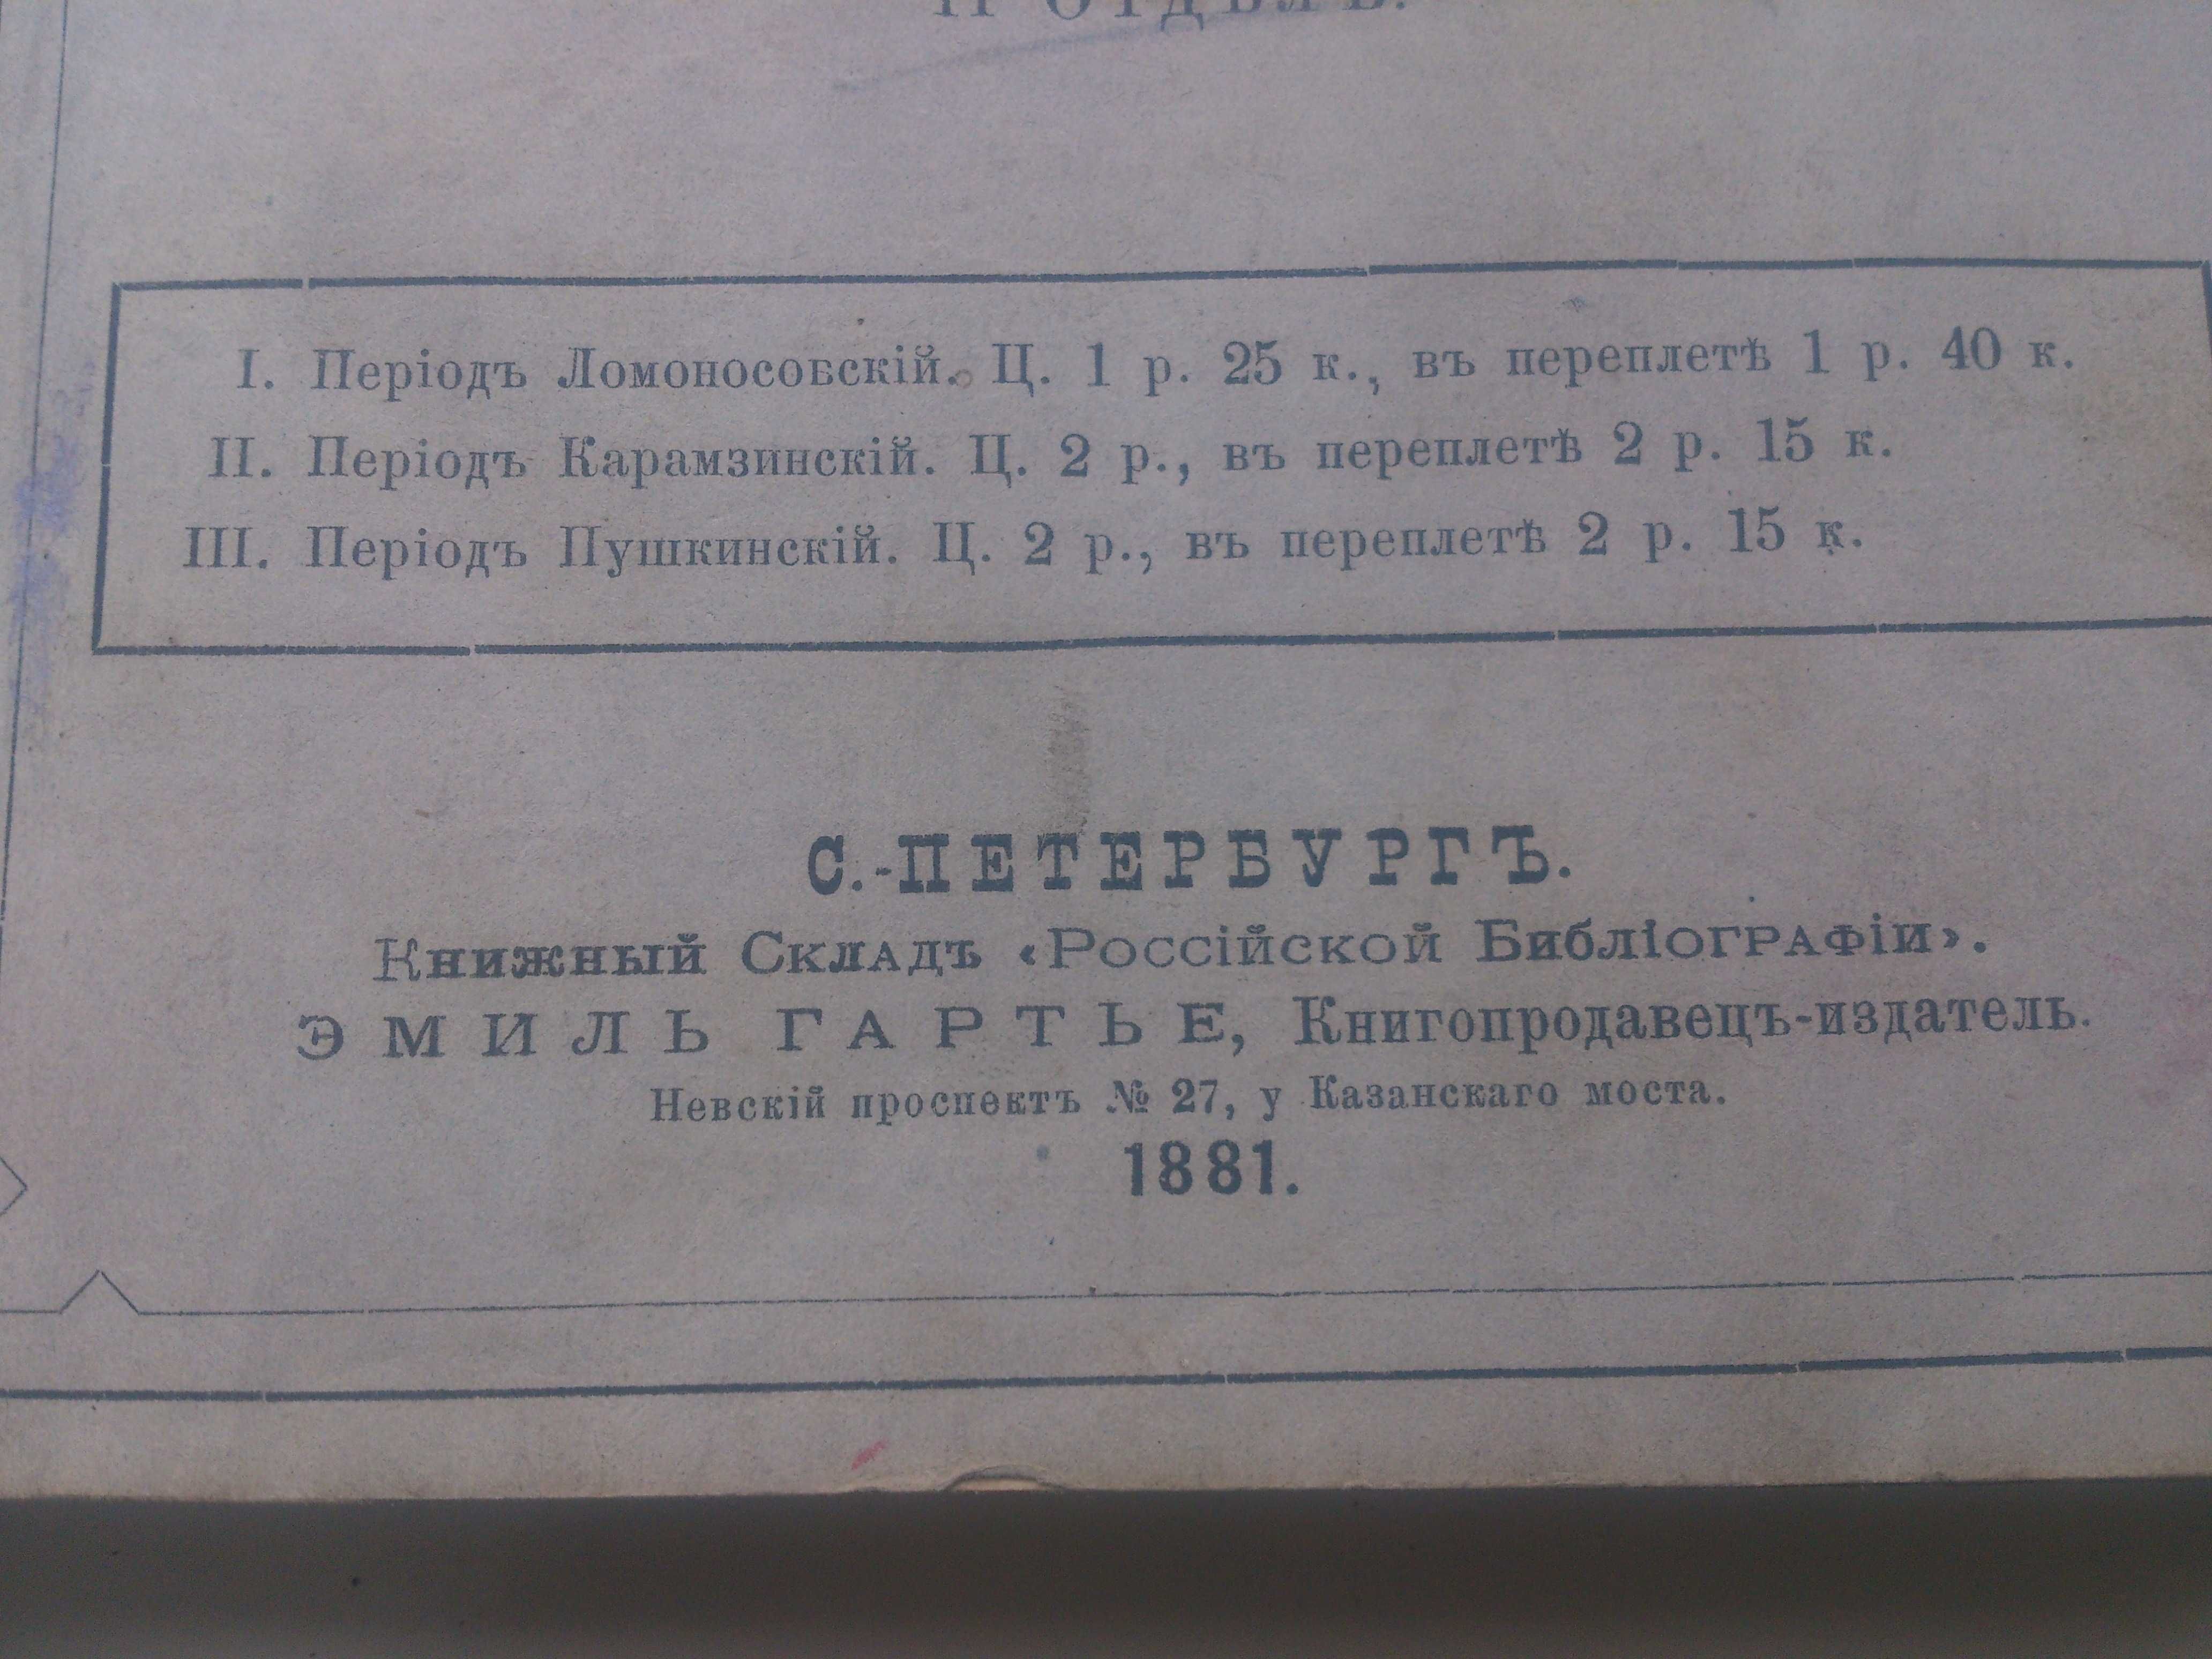 Басни Крылова - 1881 рік видання, збірка Цветков